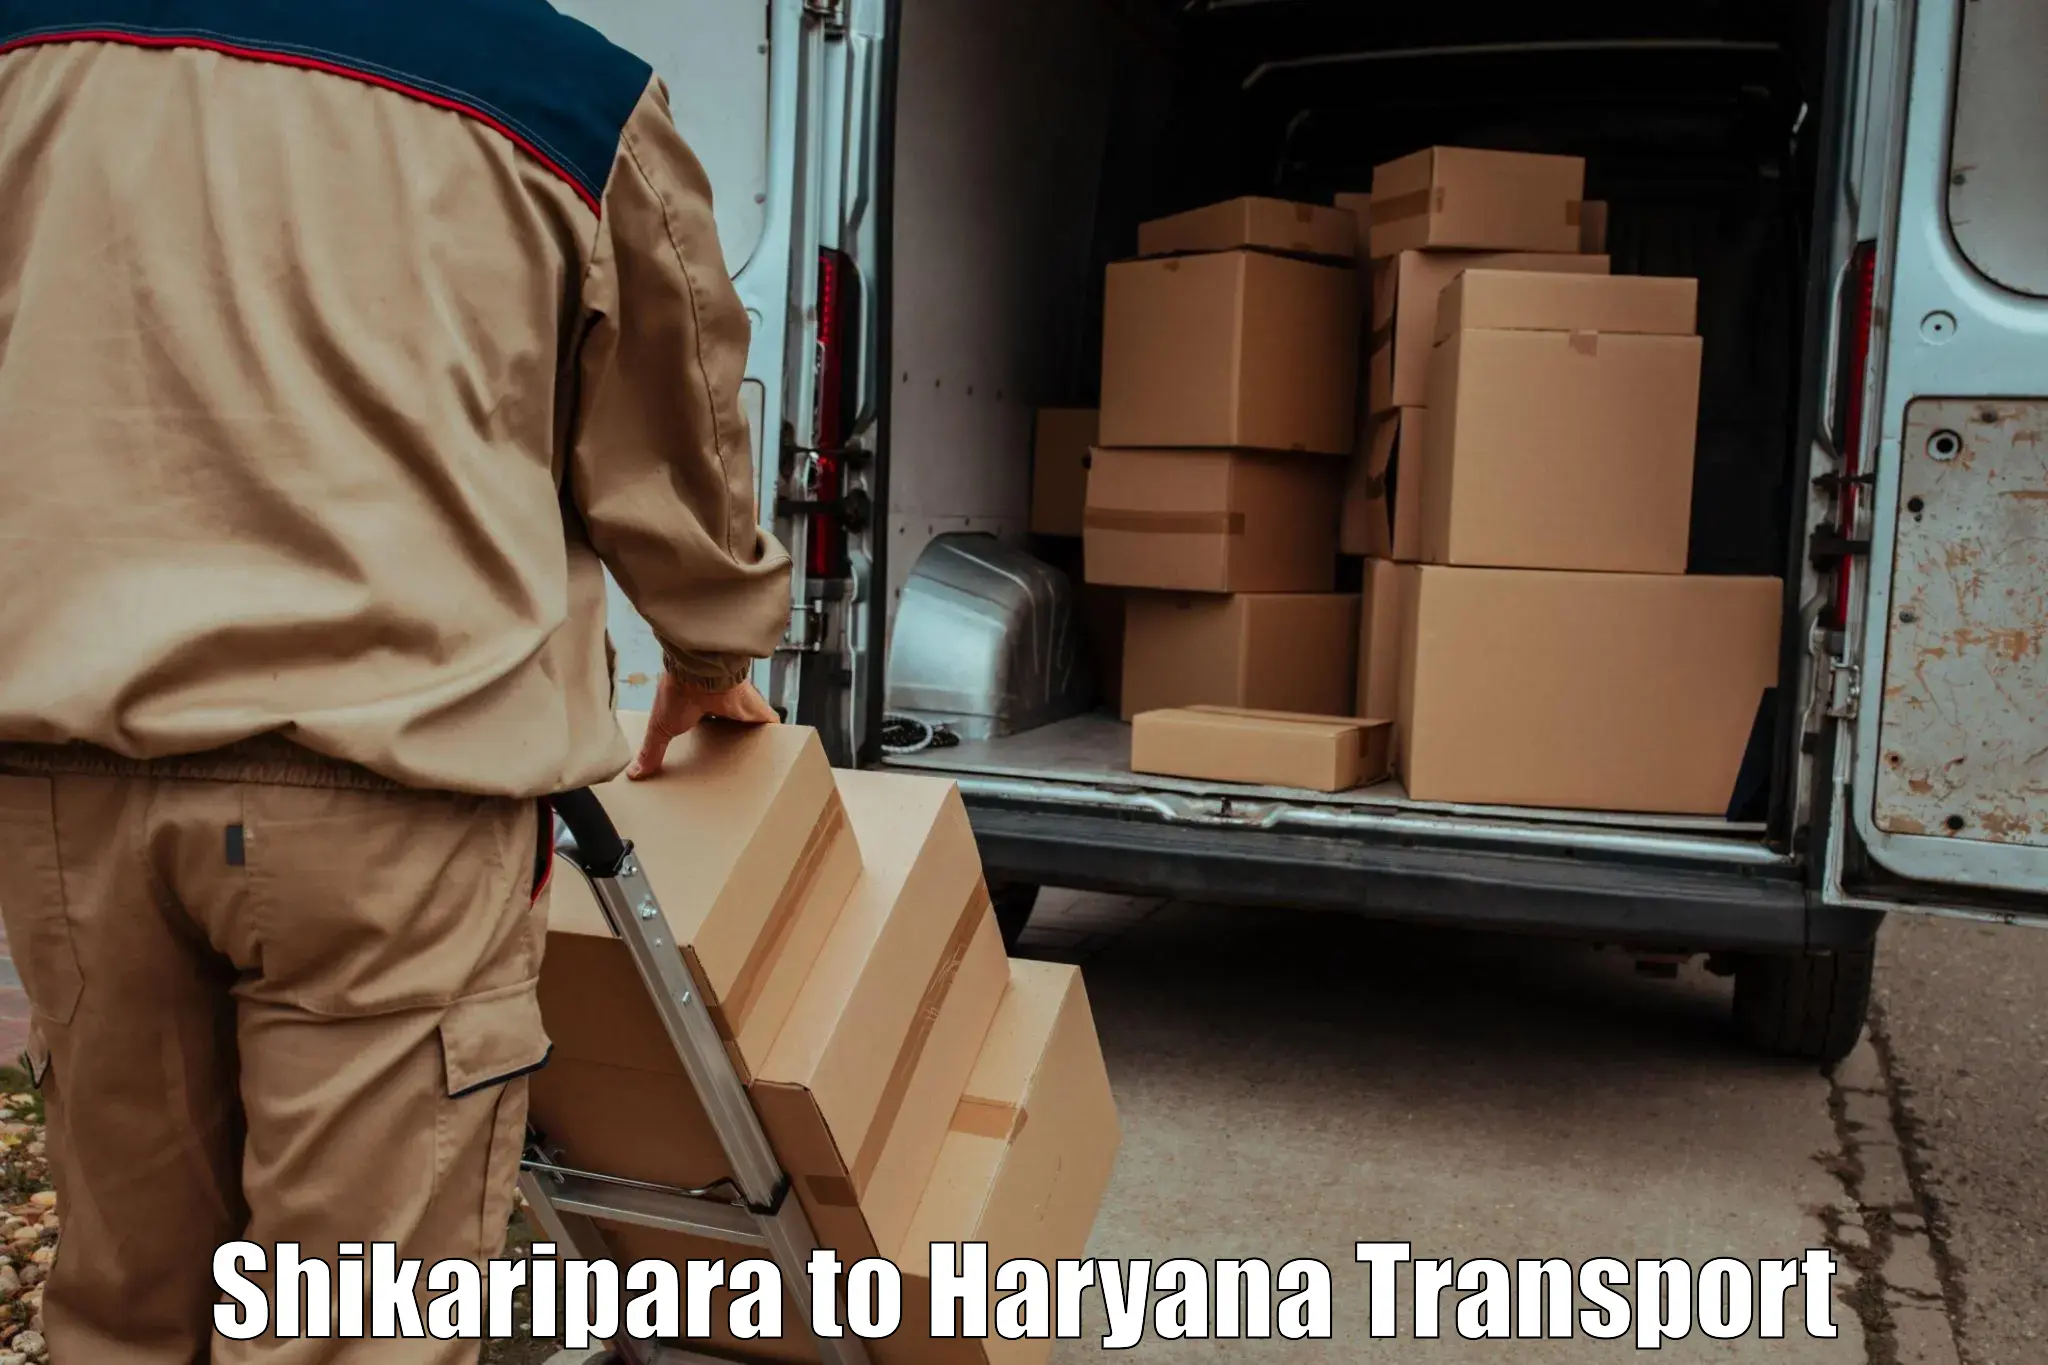 Pick up transport service Shikaripara to Chaudhary Charan Singh Haryana Agricultural University Hisar